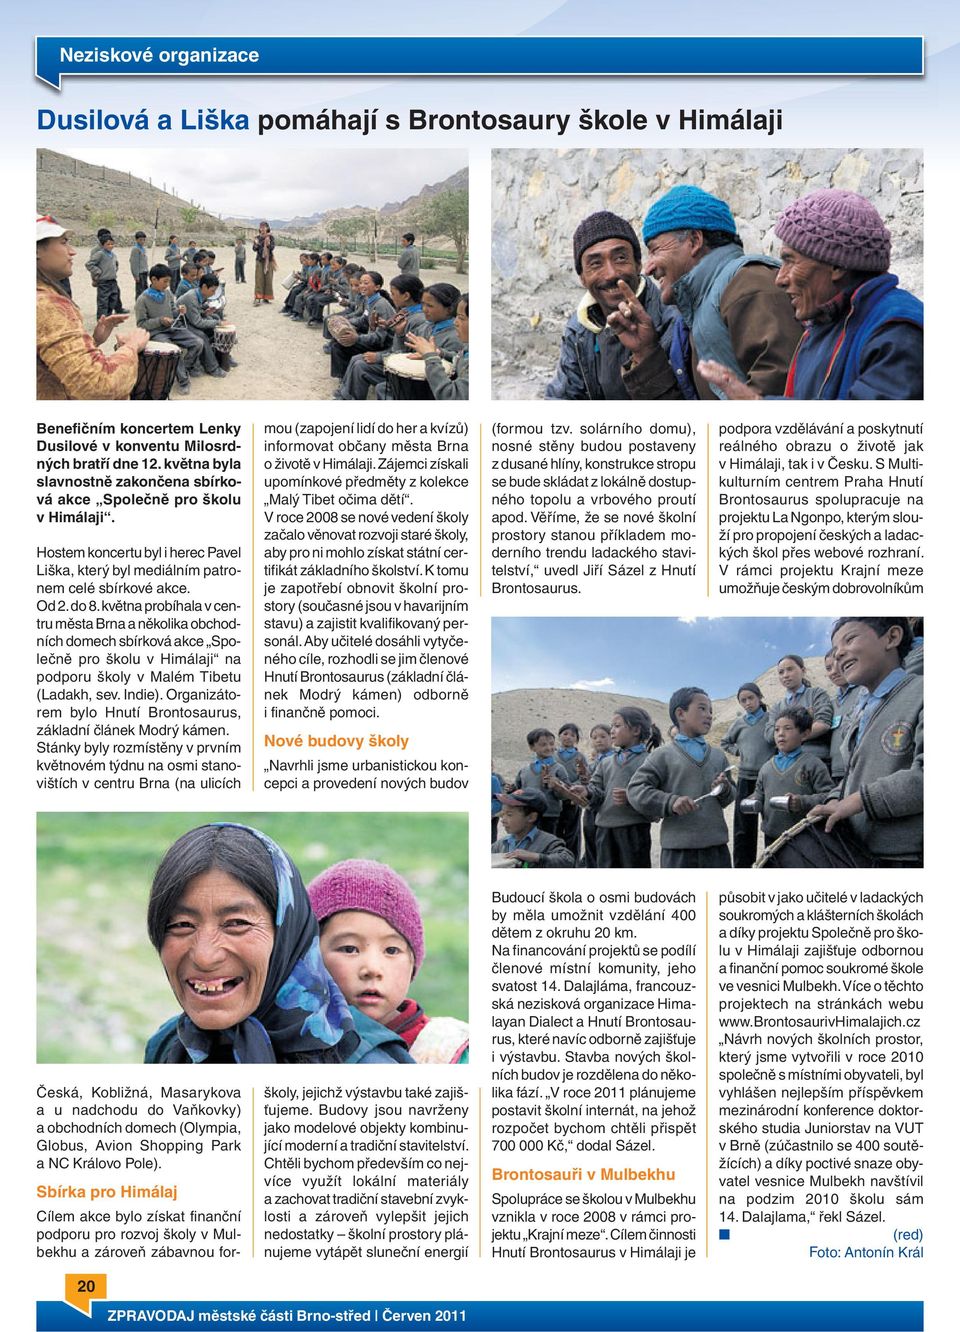 května probíhala v centru města Brna a několika obchodních domech sbírková akce Společně pro školu v Himálaji na podporu školy v Malém Tibetu (Ladakh, sev. Indie).